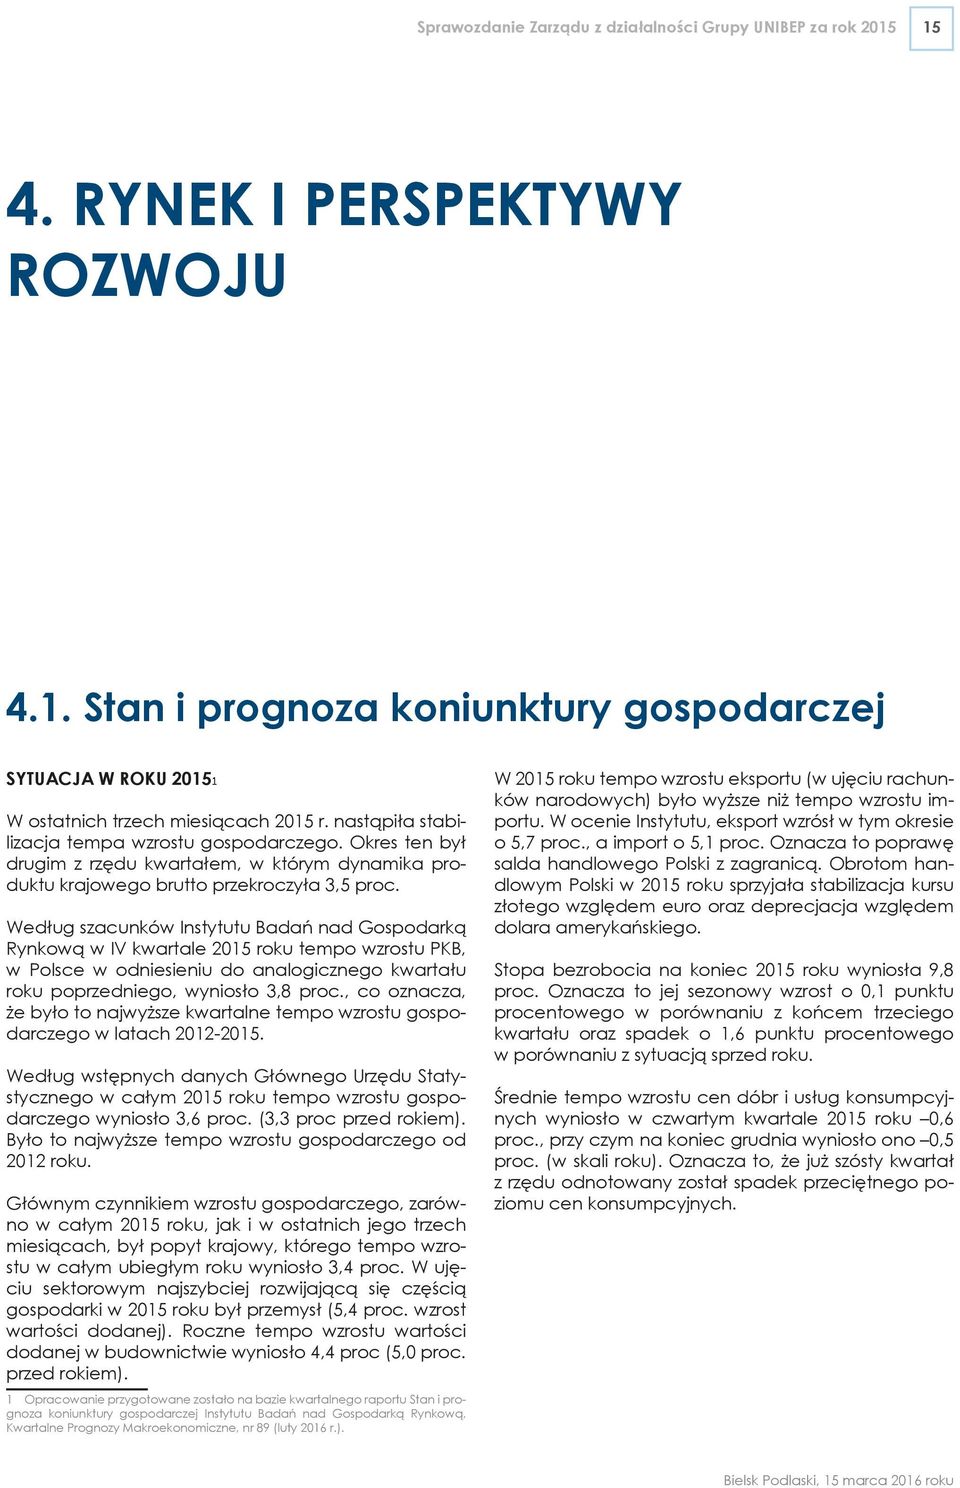 Według szacunków Instytutu Badań nad Gospodarką Rynkową w IV kwartale 2015 roku tempo wzrostu PKB, w Polsce w odniesieniu do analogicznego kwartału roku poprzedniego, wyniosło 3,8 proc.